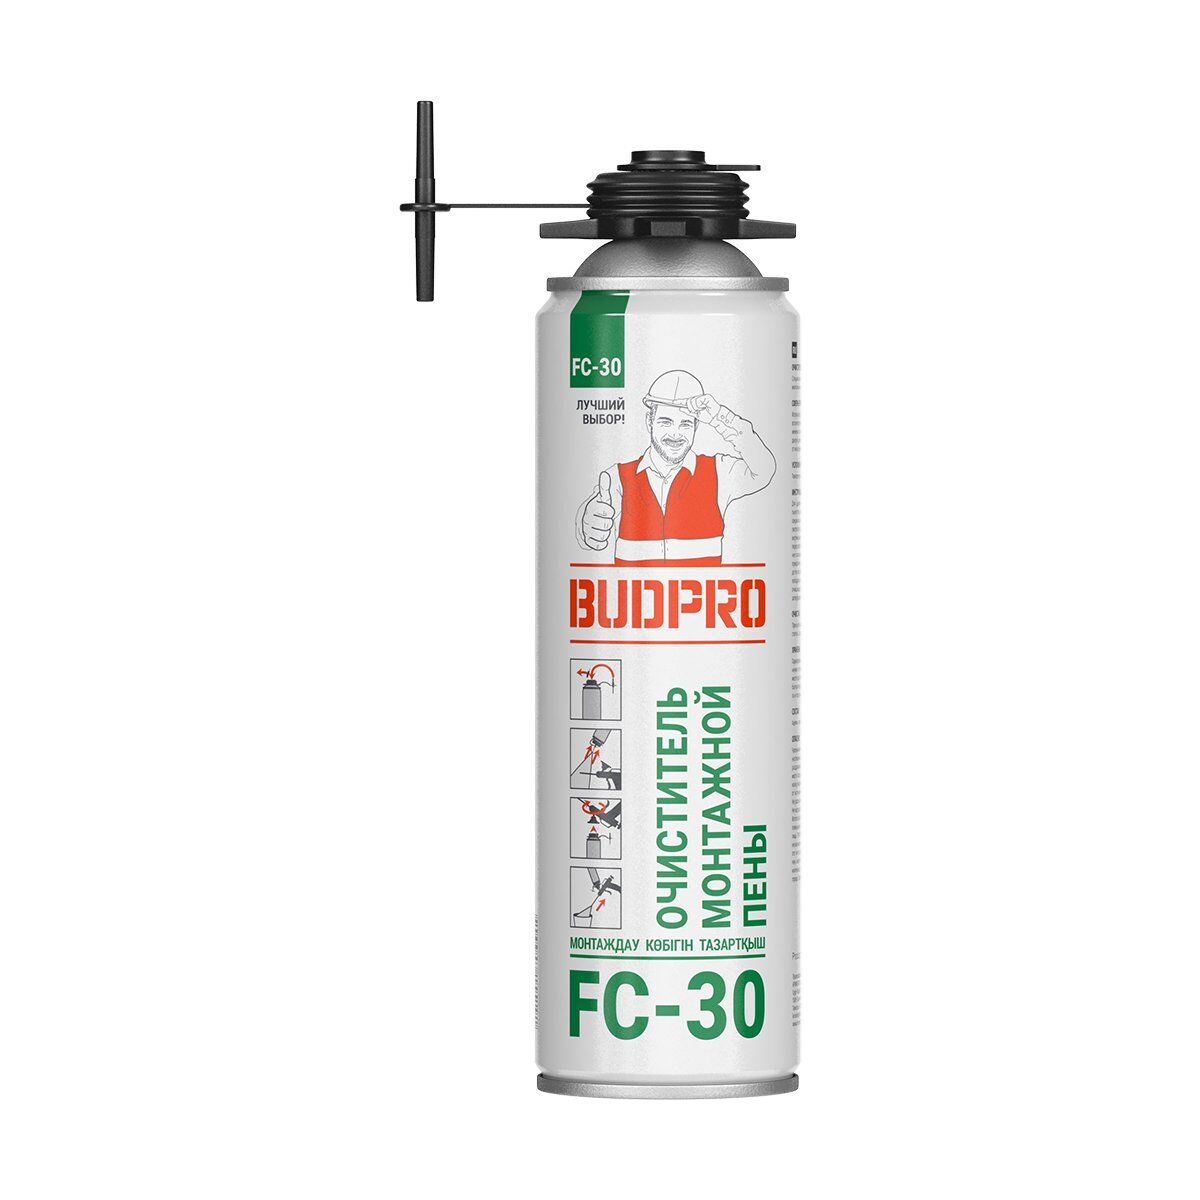 Очиститель монтажной пены Budpro FC-30